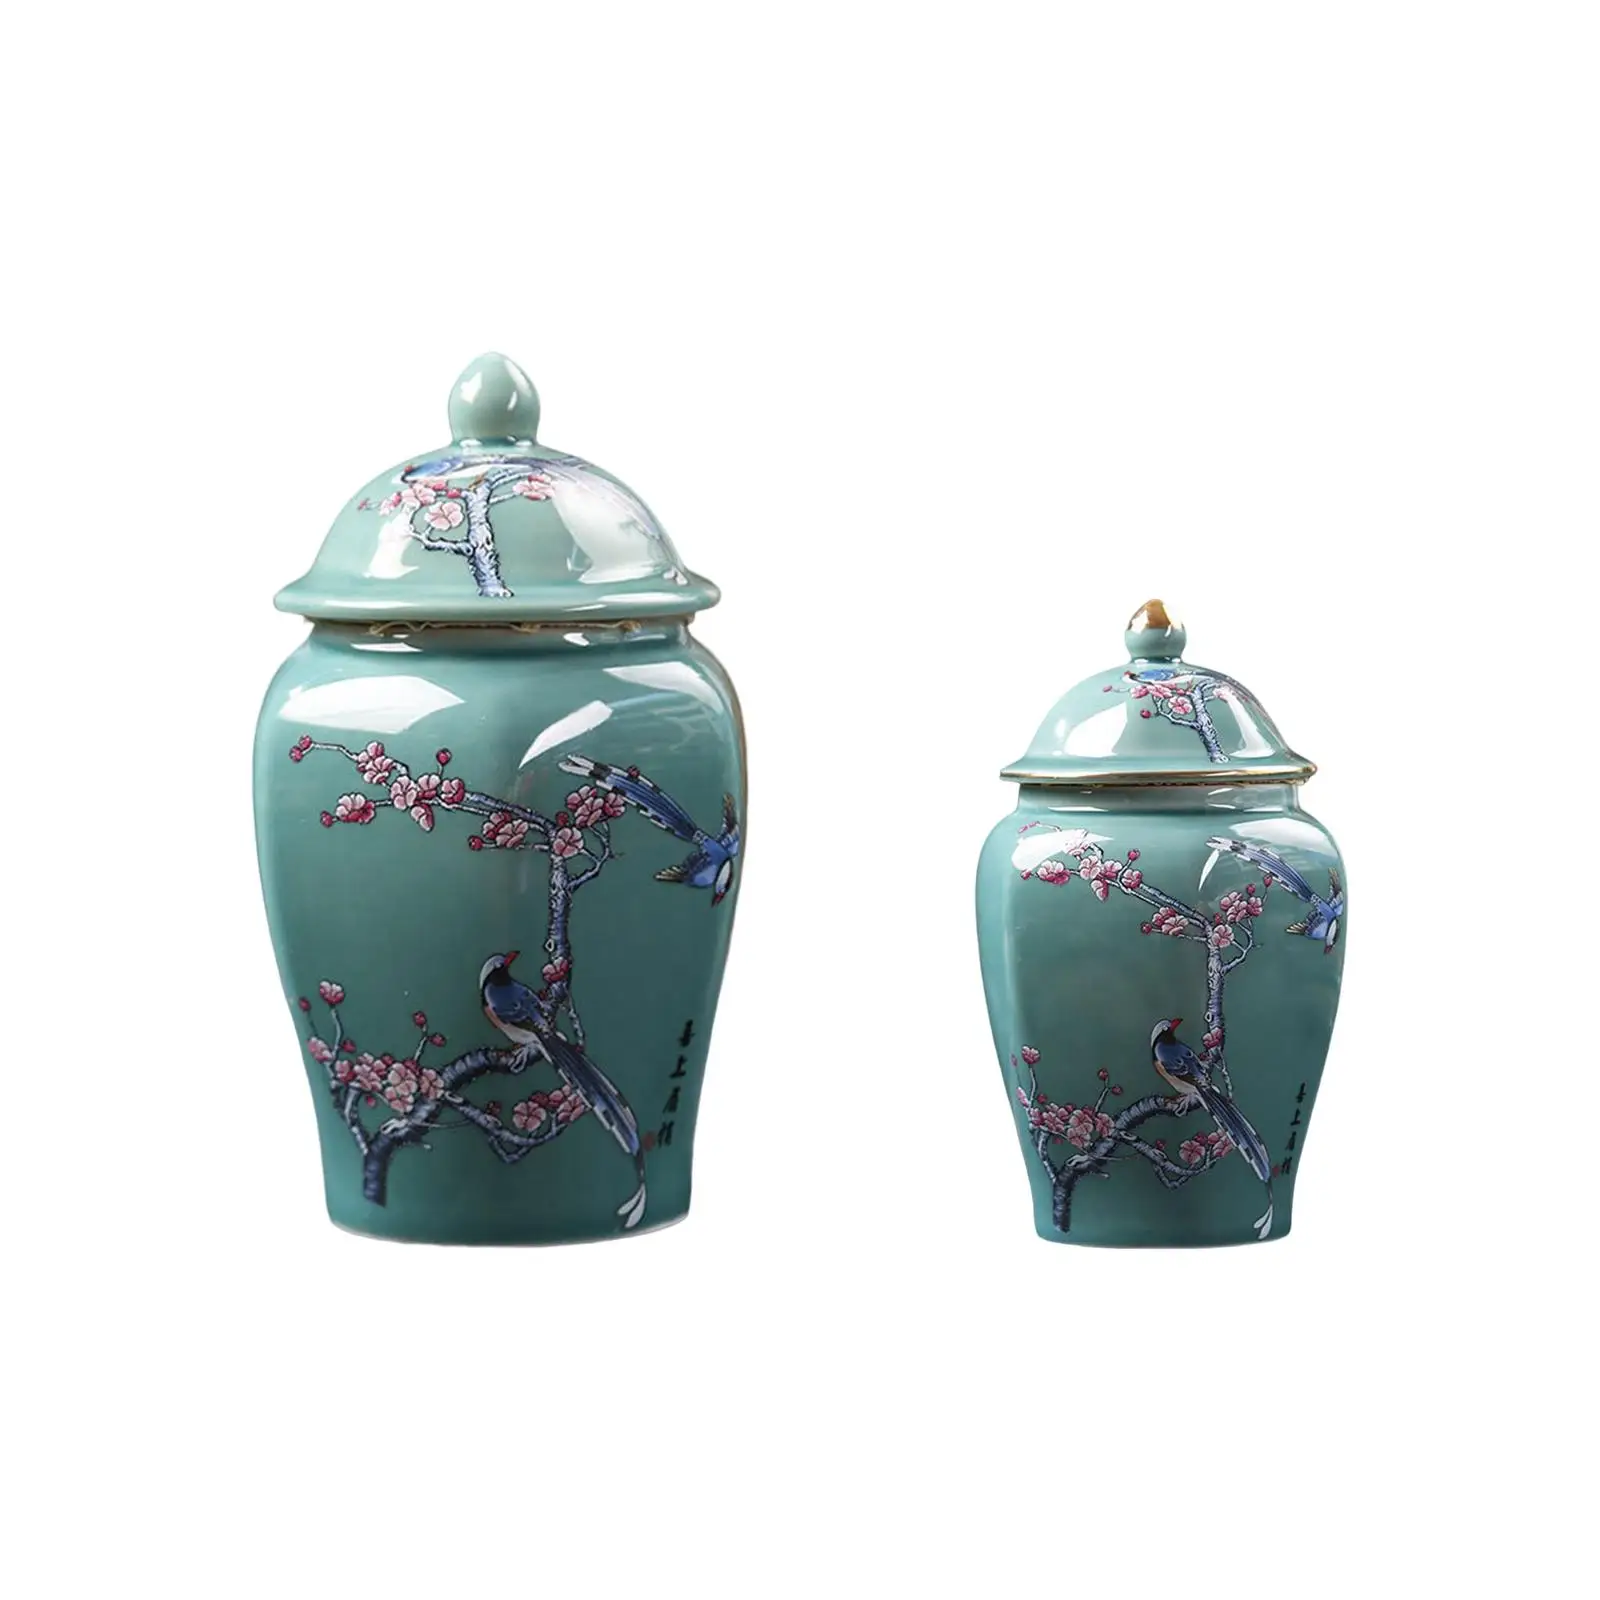 Traditional Flower Vase Tea Tin Porcelain Storage Jar Ceramic Ginger Jars